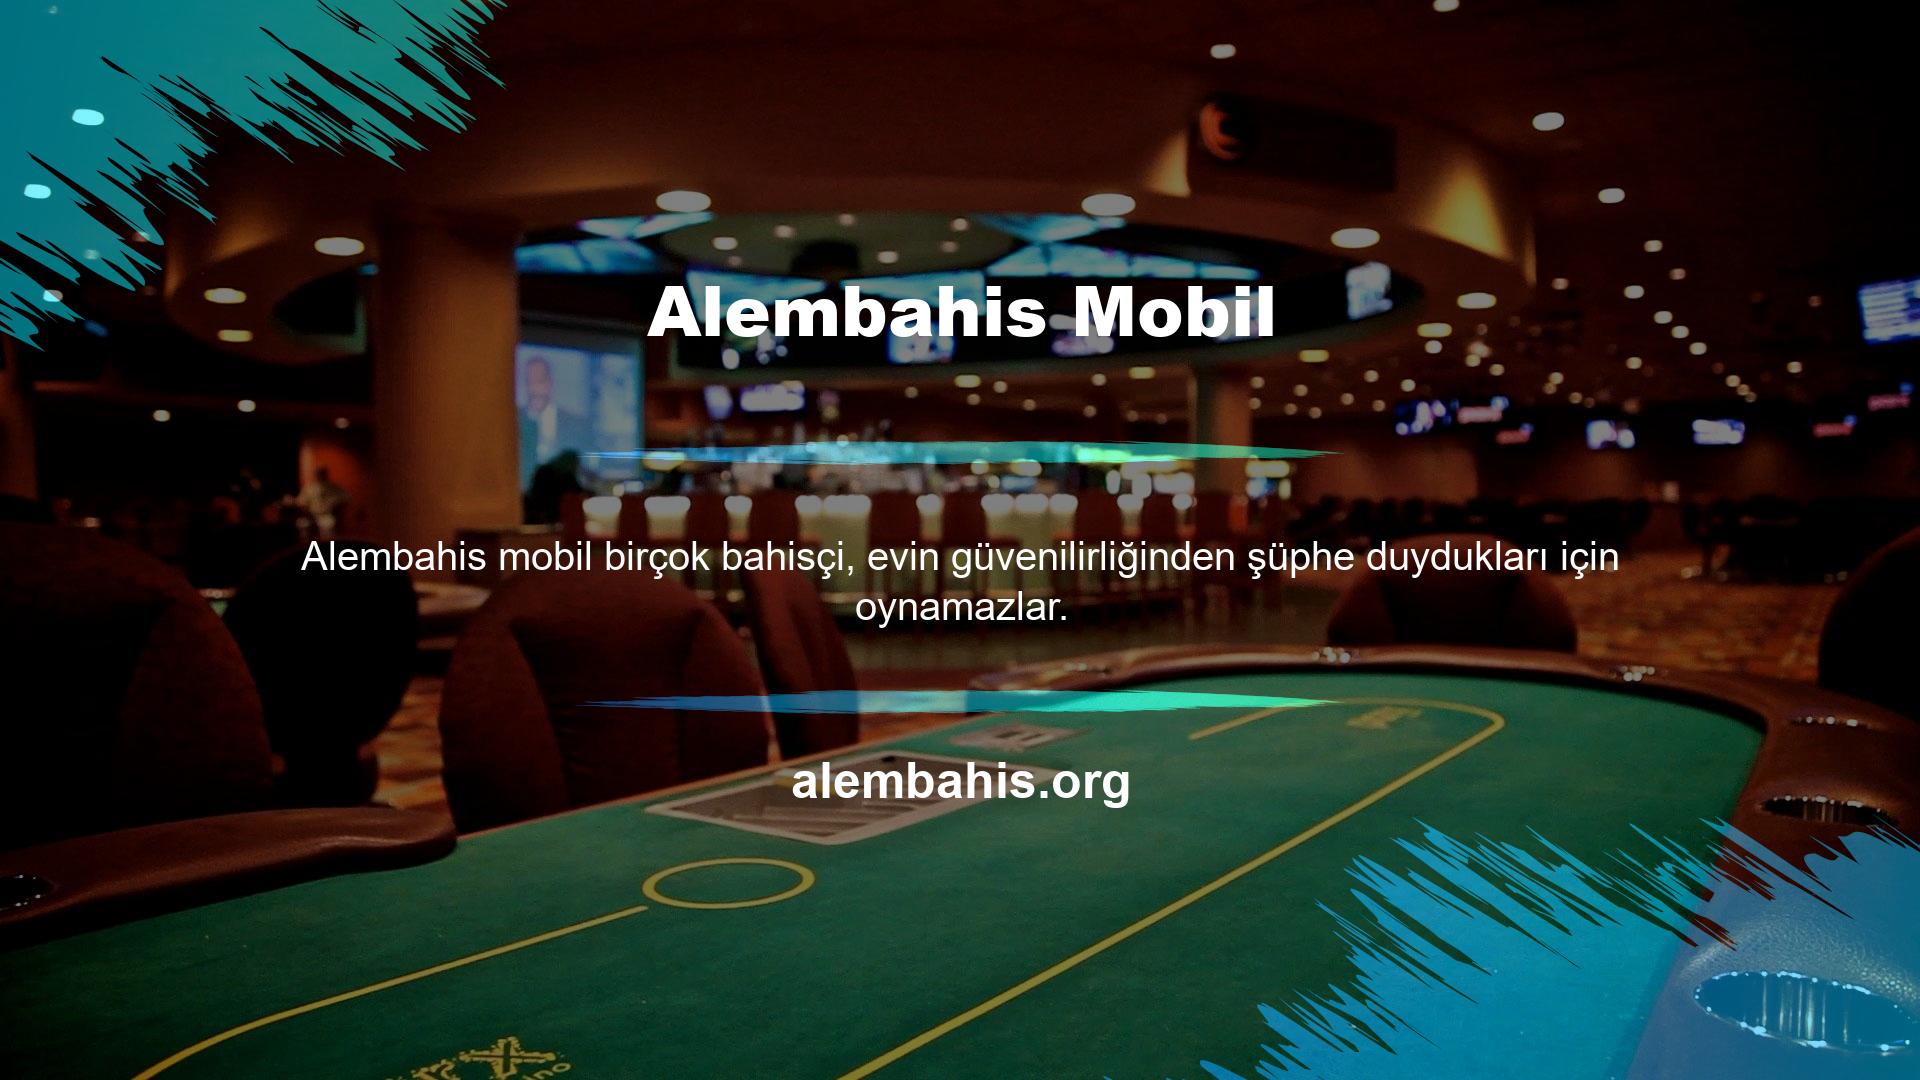 Bahis yaparken soru işareti kalmasın diye casino sektörünün en önde gelen şirketlerinden biri olan Alembahis Mobil'i sizlere sunuyoruz